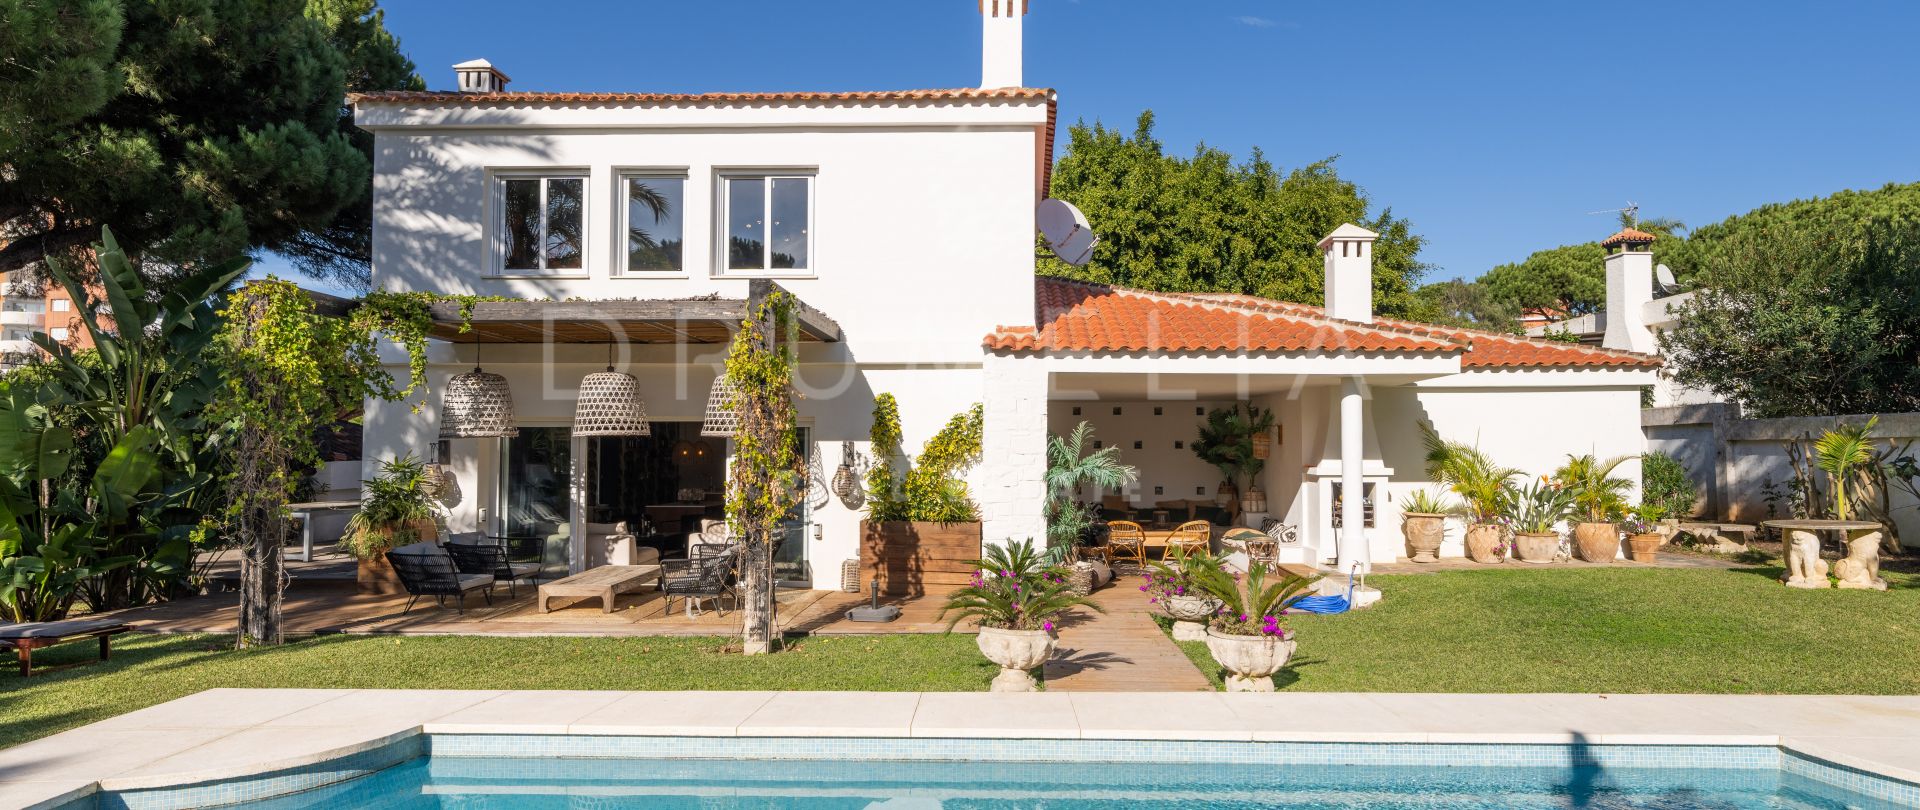 Exquisite Villa am Strand mit üppigem Garten und Pool in Marbesa